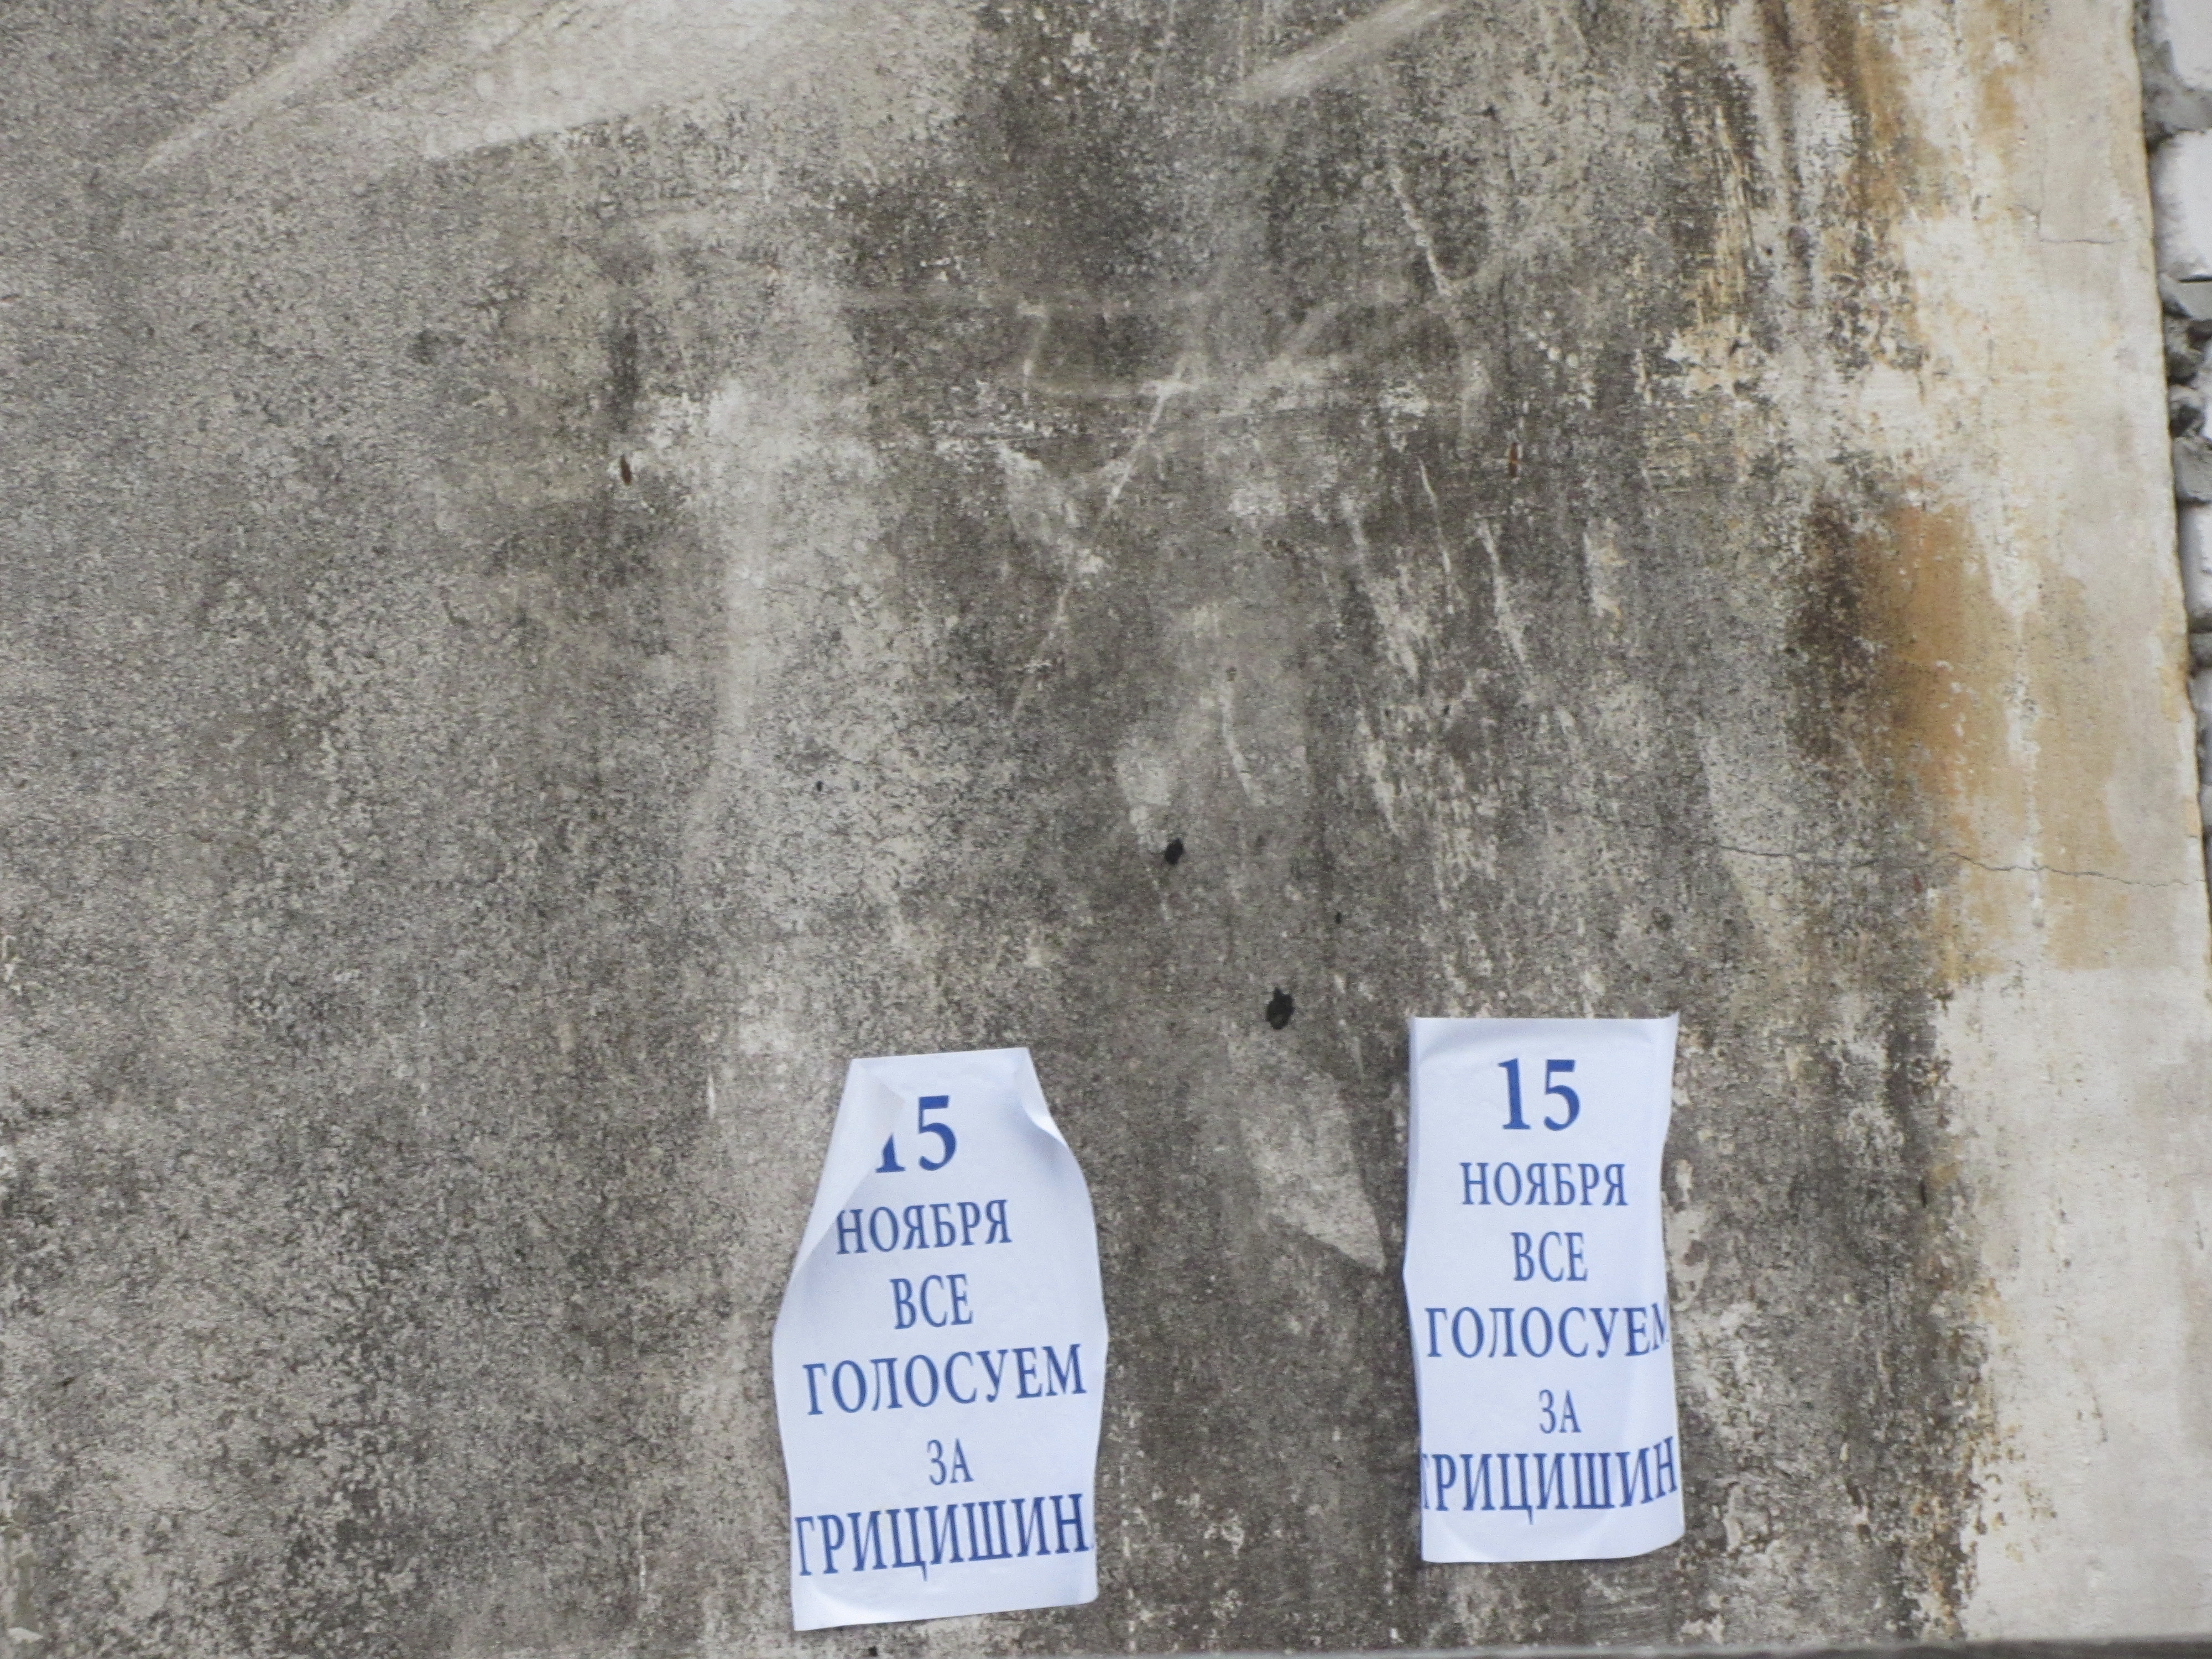 Передвиборча столиця Луганщини: агітація не припиняється (ФОТО) - фото 1